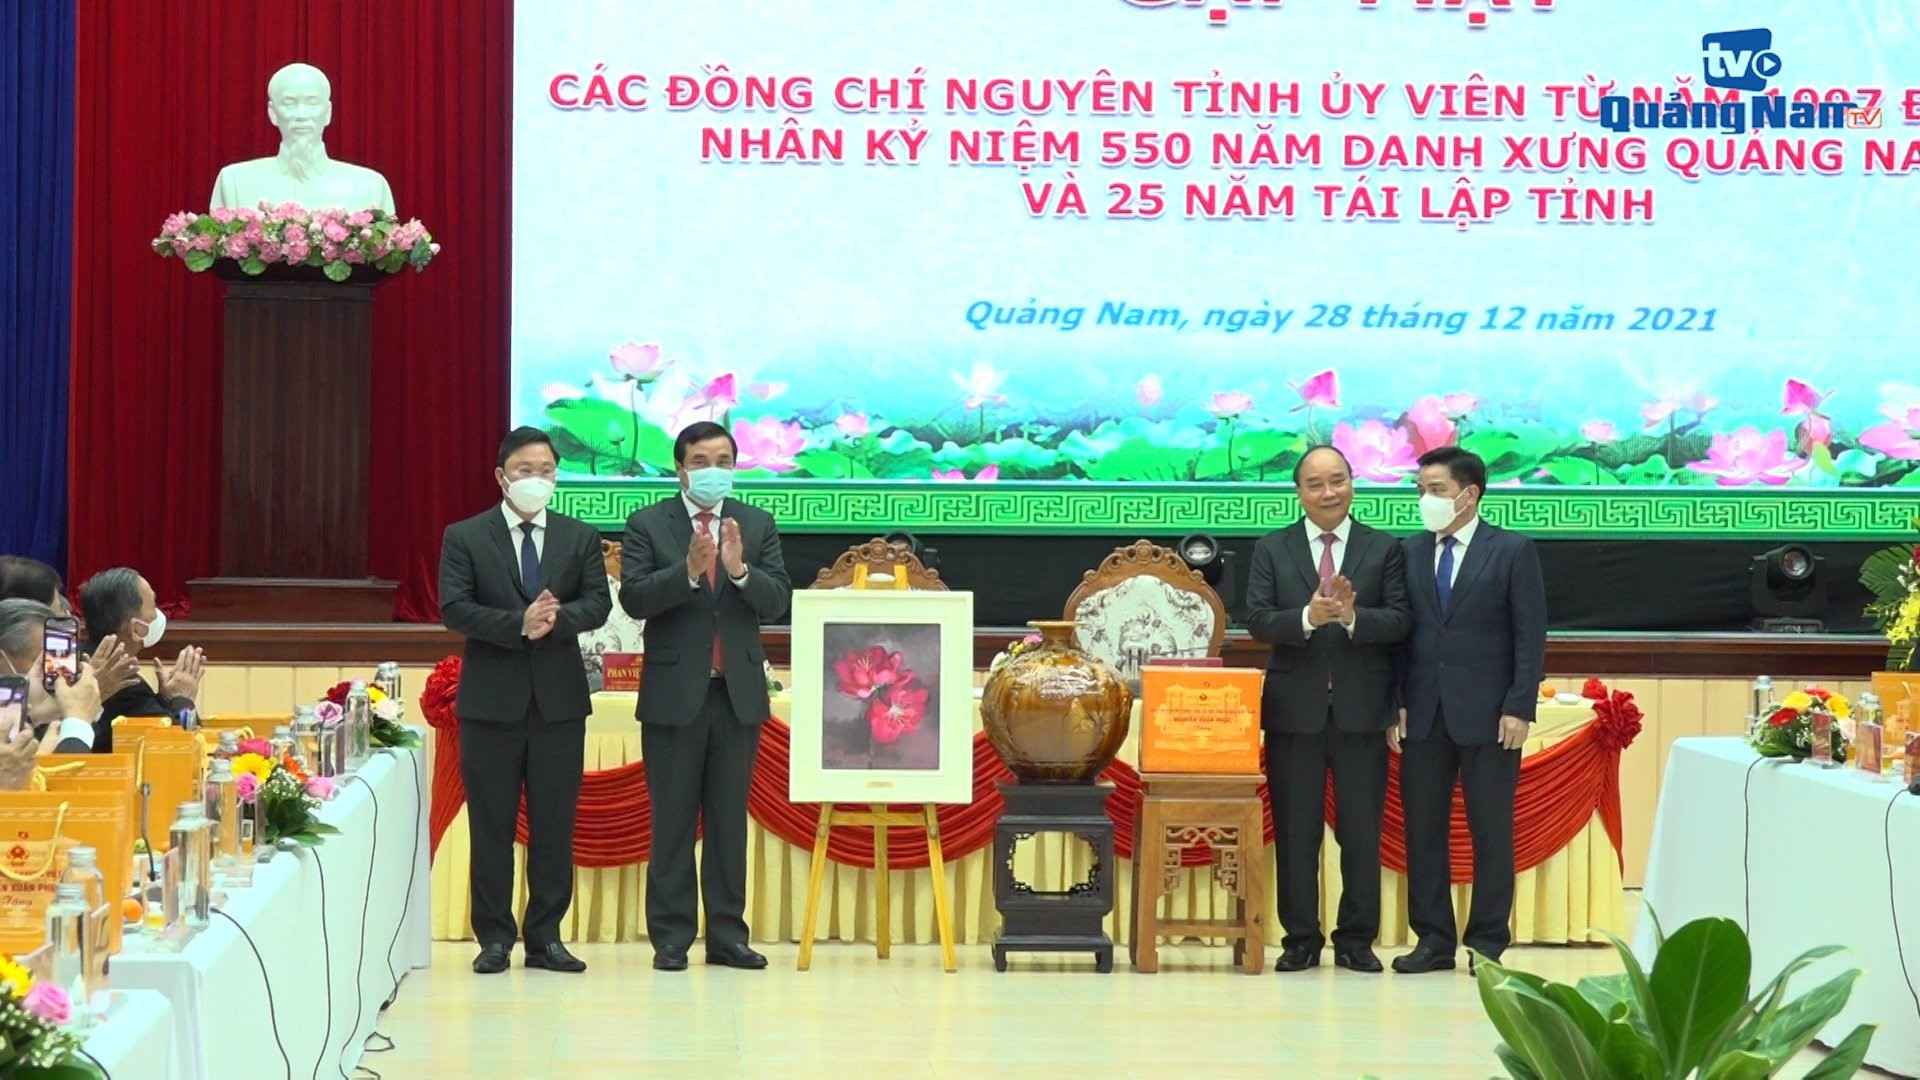 Ủy viên Bộ Chính trị, Chủ tịch nước Nguyễn Xuân Phúc cùng lãnh đạo tỉnh Quảng Nam chụp hình lưu niệm trong chuỗi hoạt động hướng đến kỷ niệm 550 năm Danh xưng Quảng Nam.